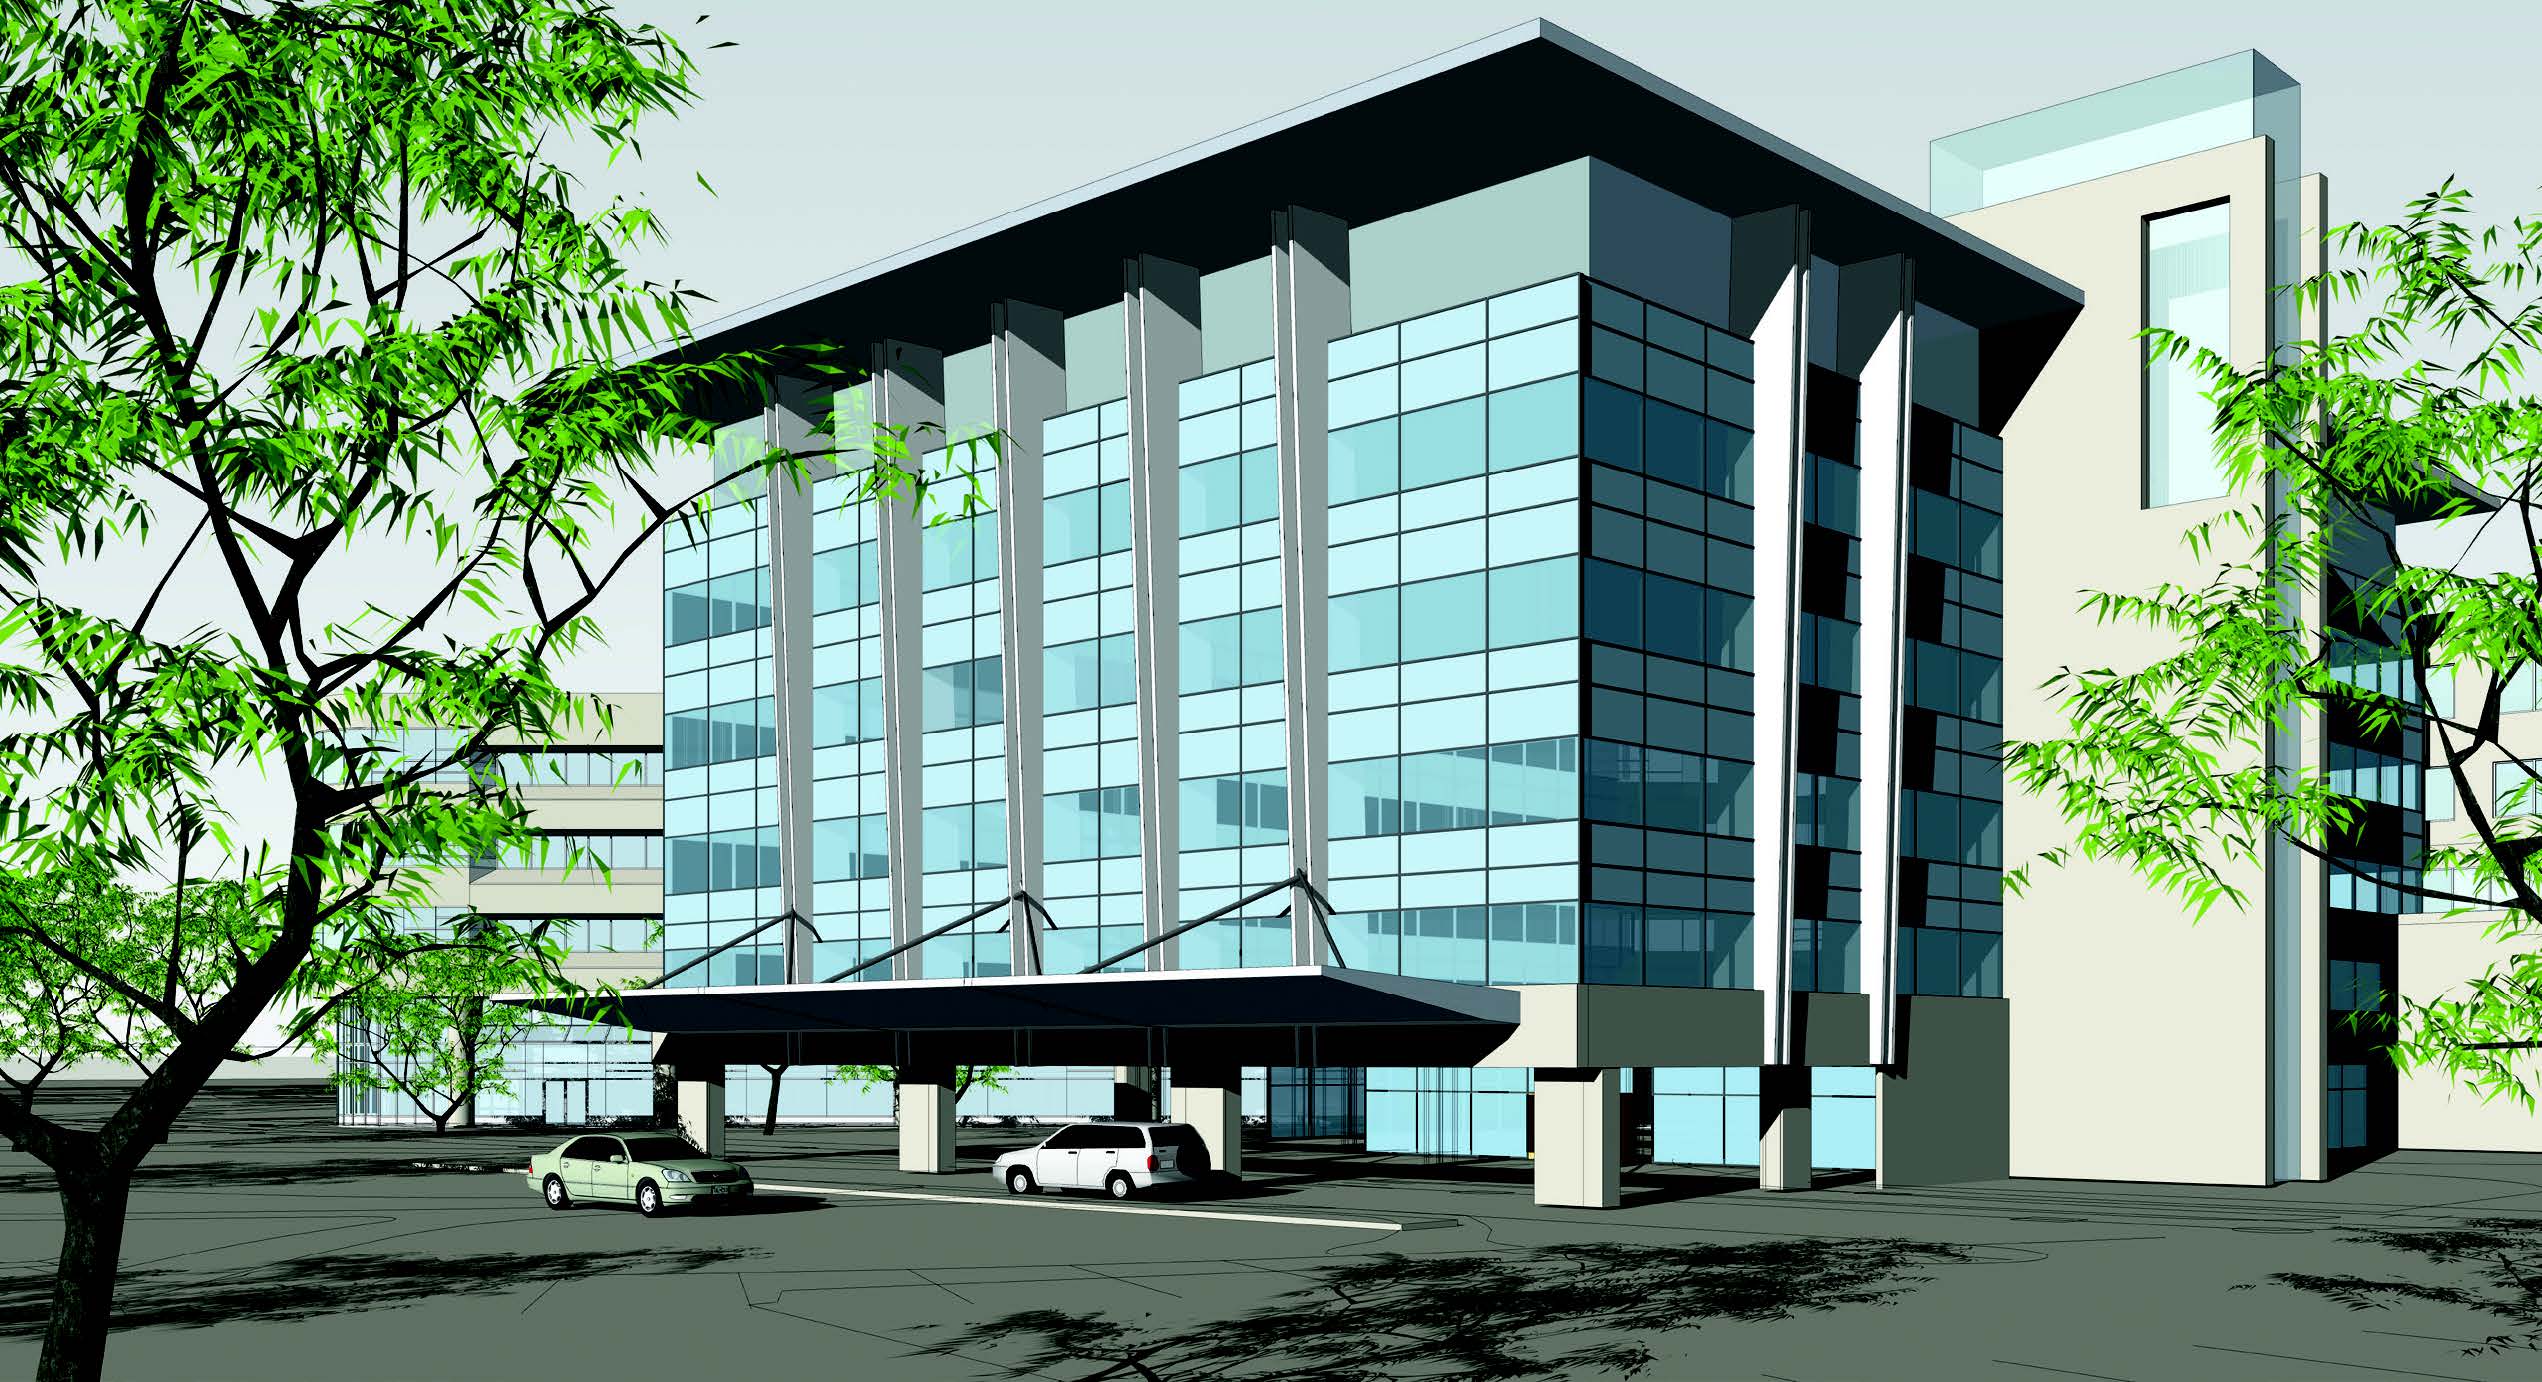 St. Joseph Medical Center Pavilion rendering